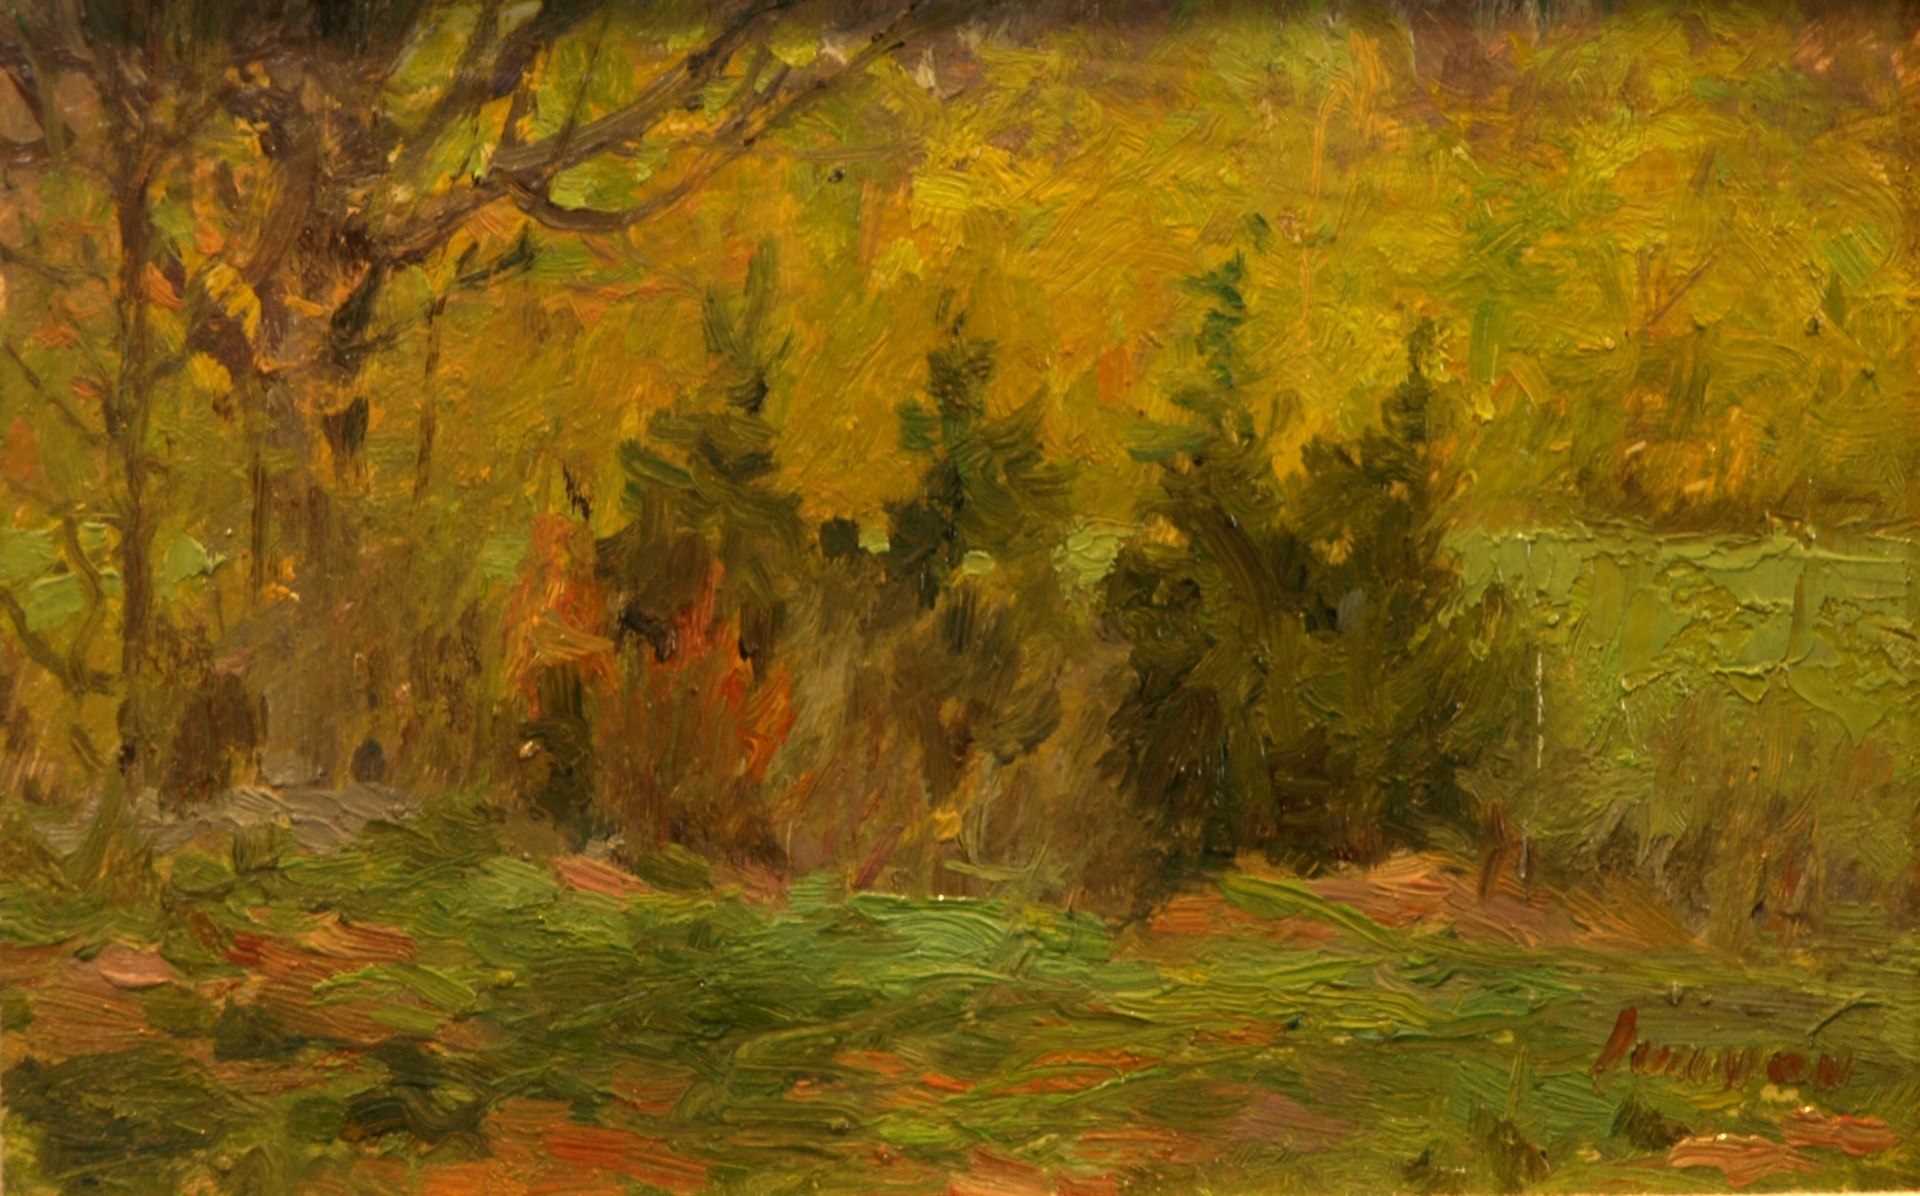 Four Cedars - Springtime, Oil on Panel, 6 x 10 Inches, by Bernard Lennon, $225